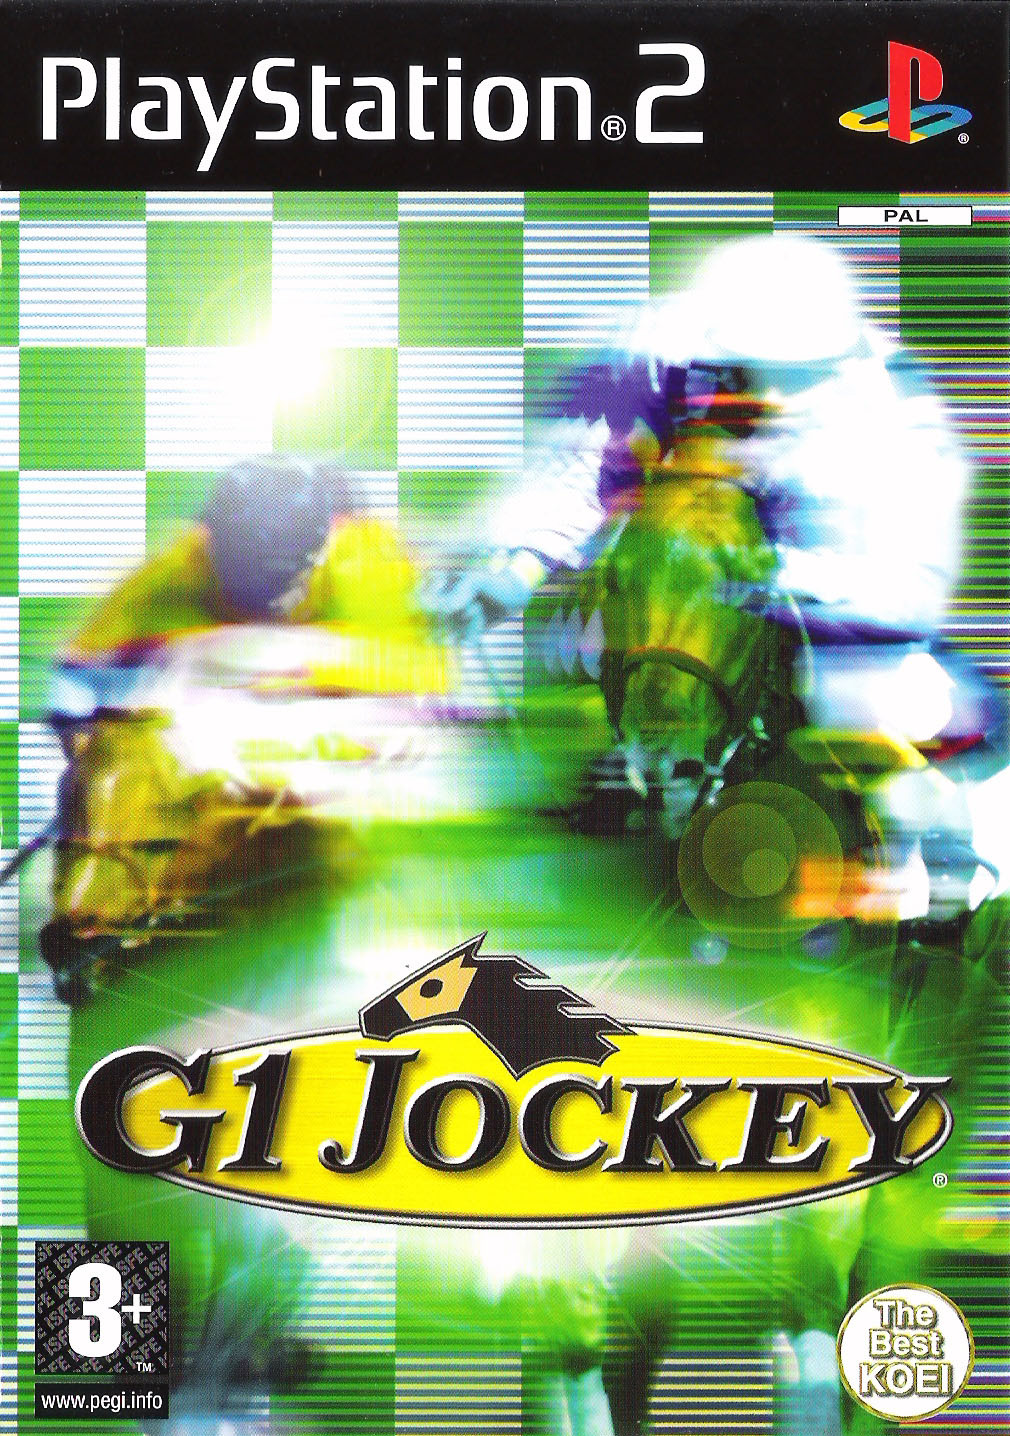 G1 Jockey